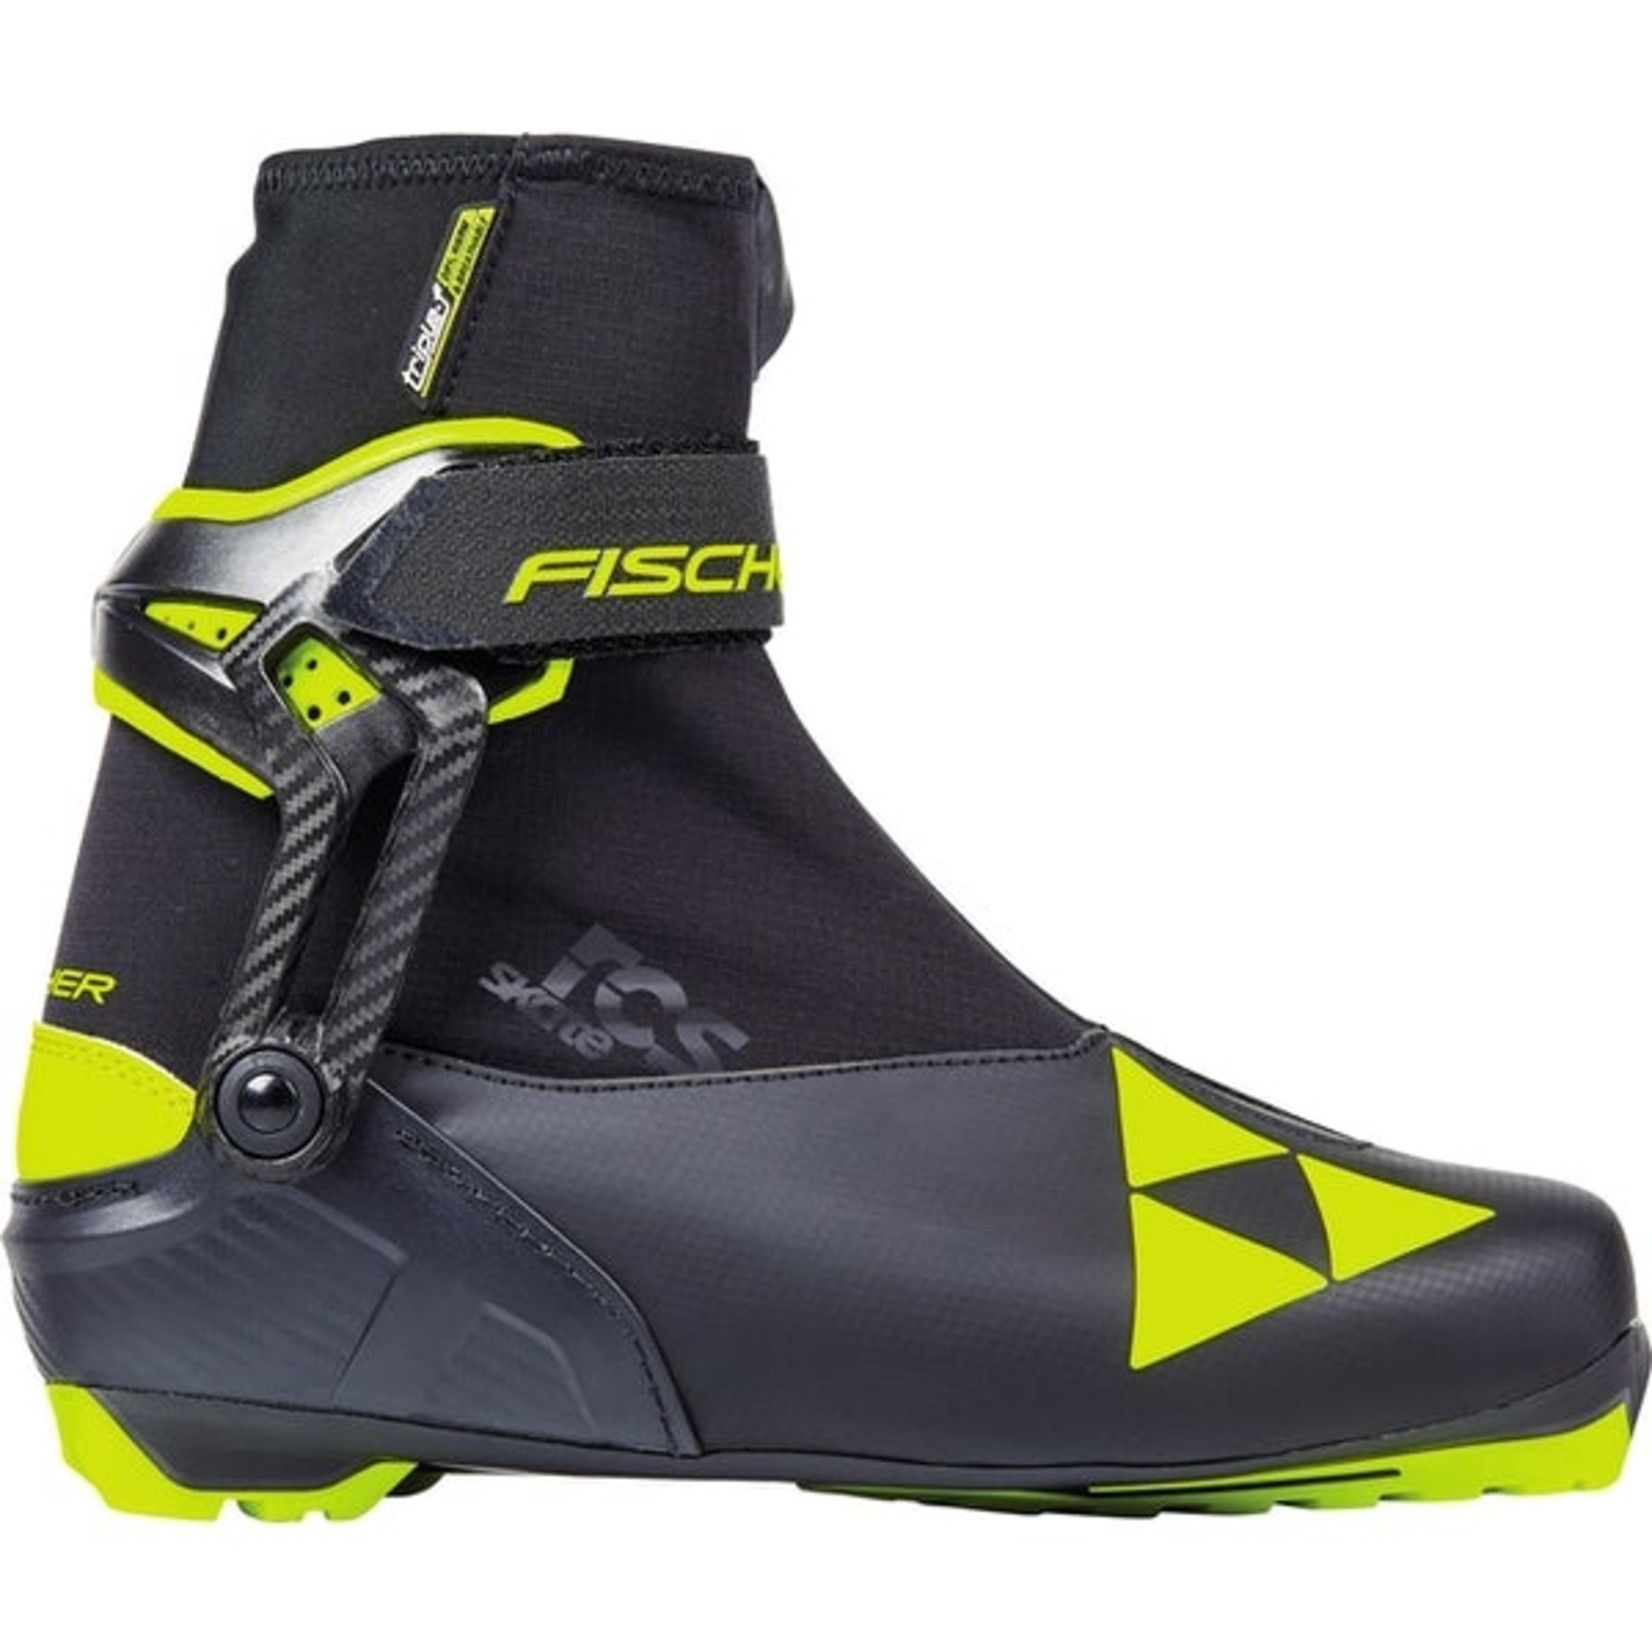 Fischer RCS Skate Boots